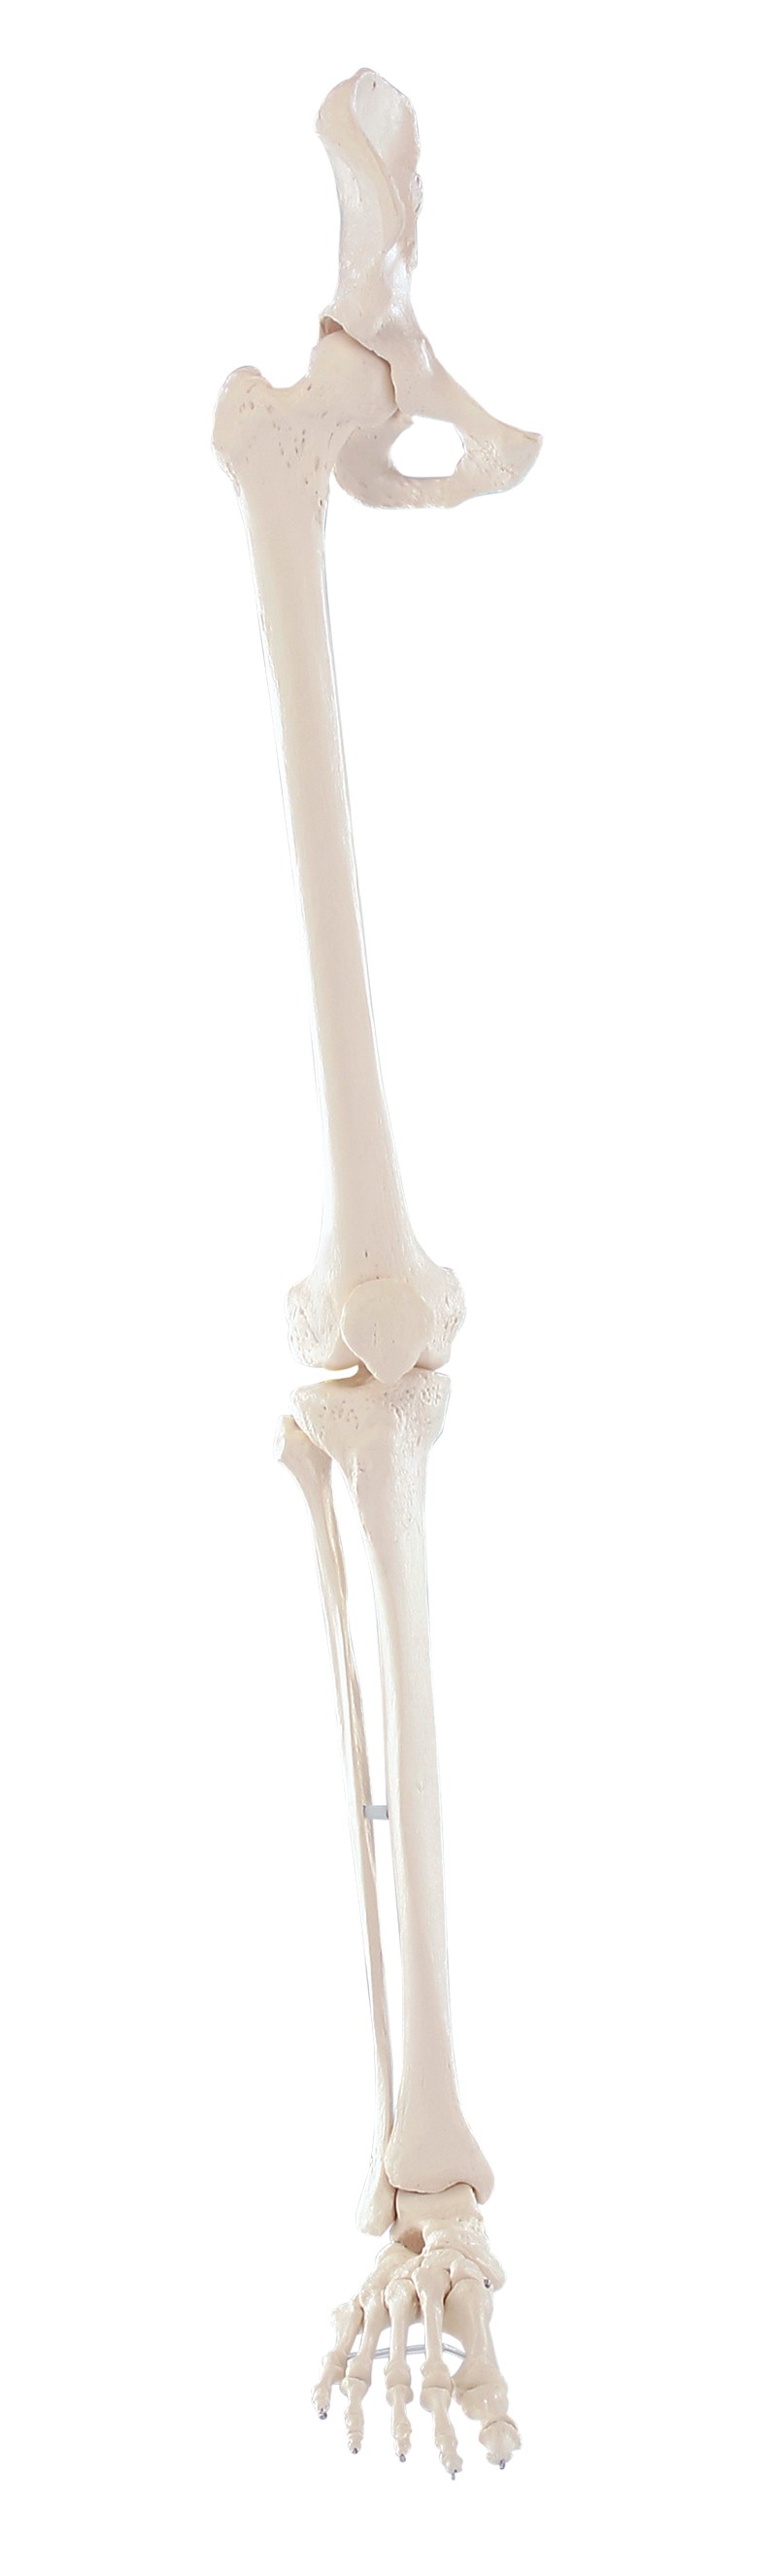 Szkielet kończyny dolnej człowieka + obręcz biodrowa - Image no.: 1